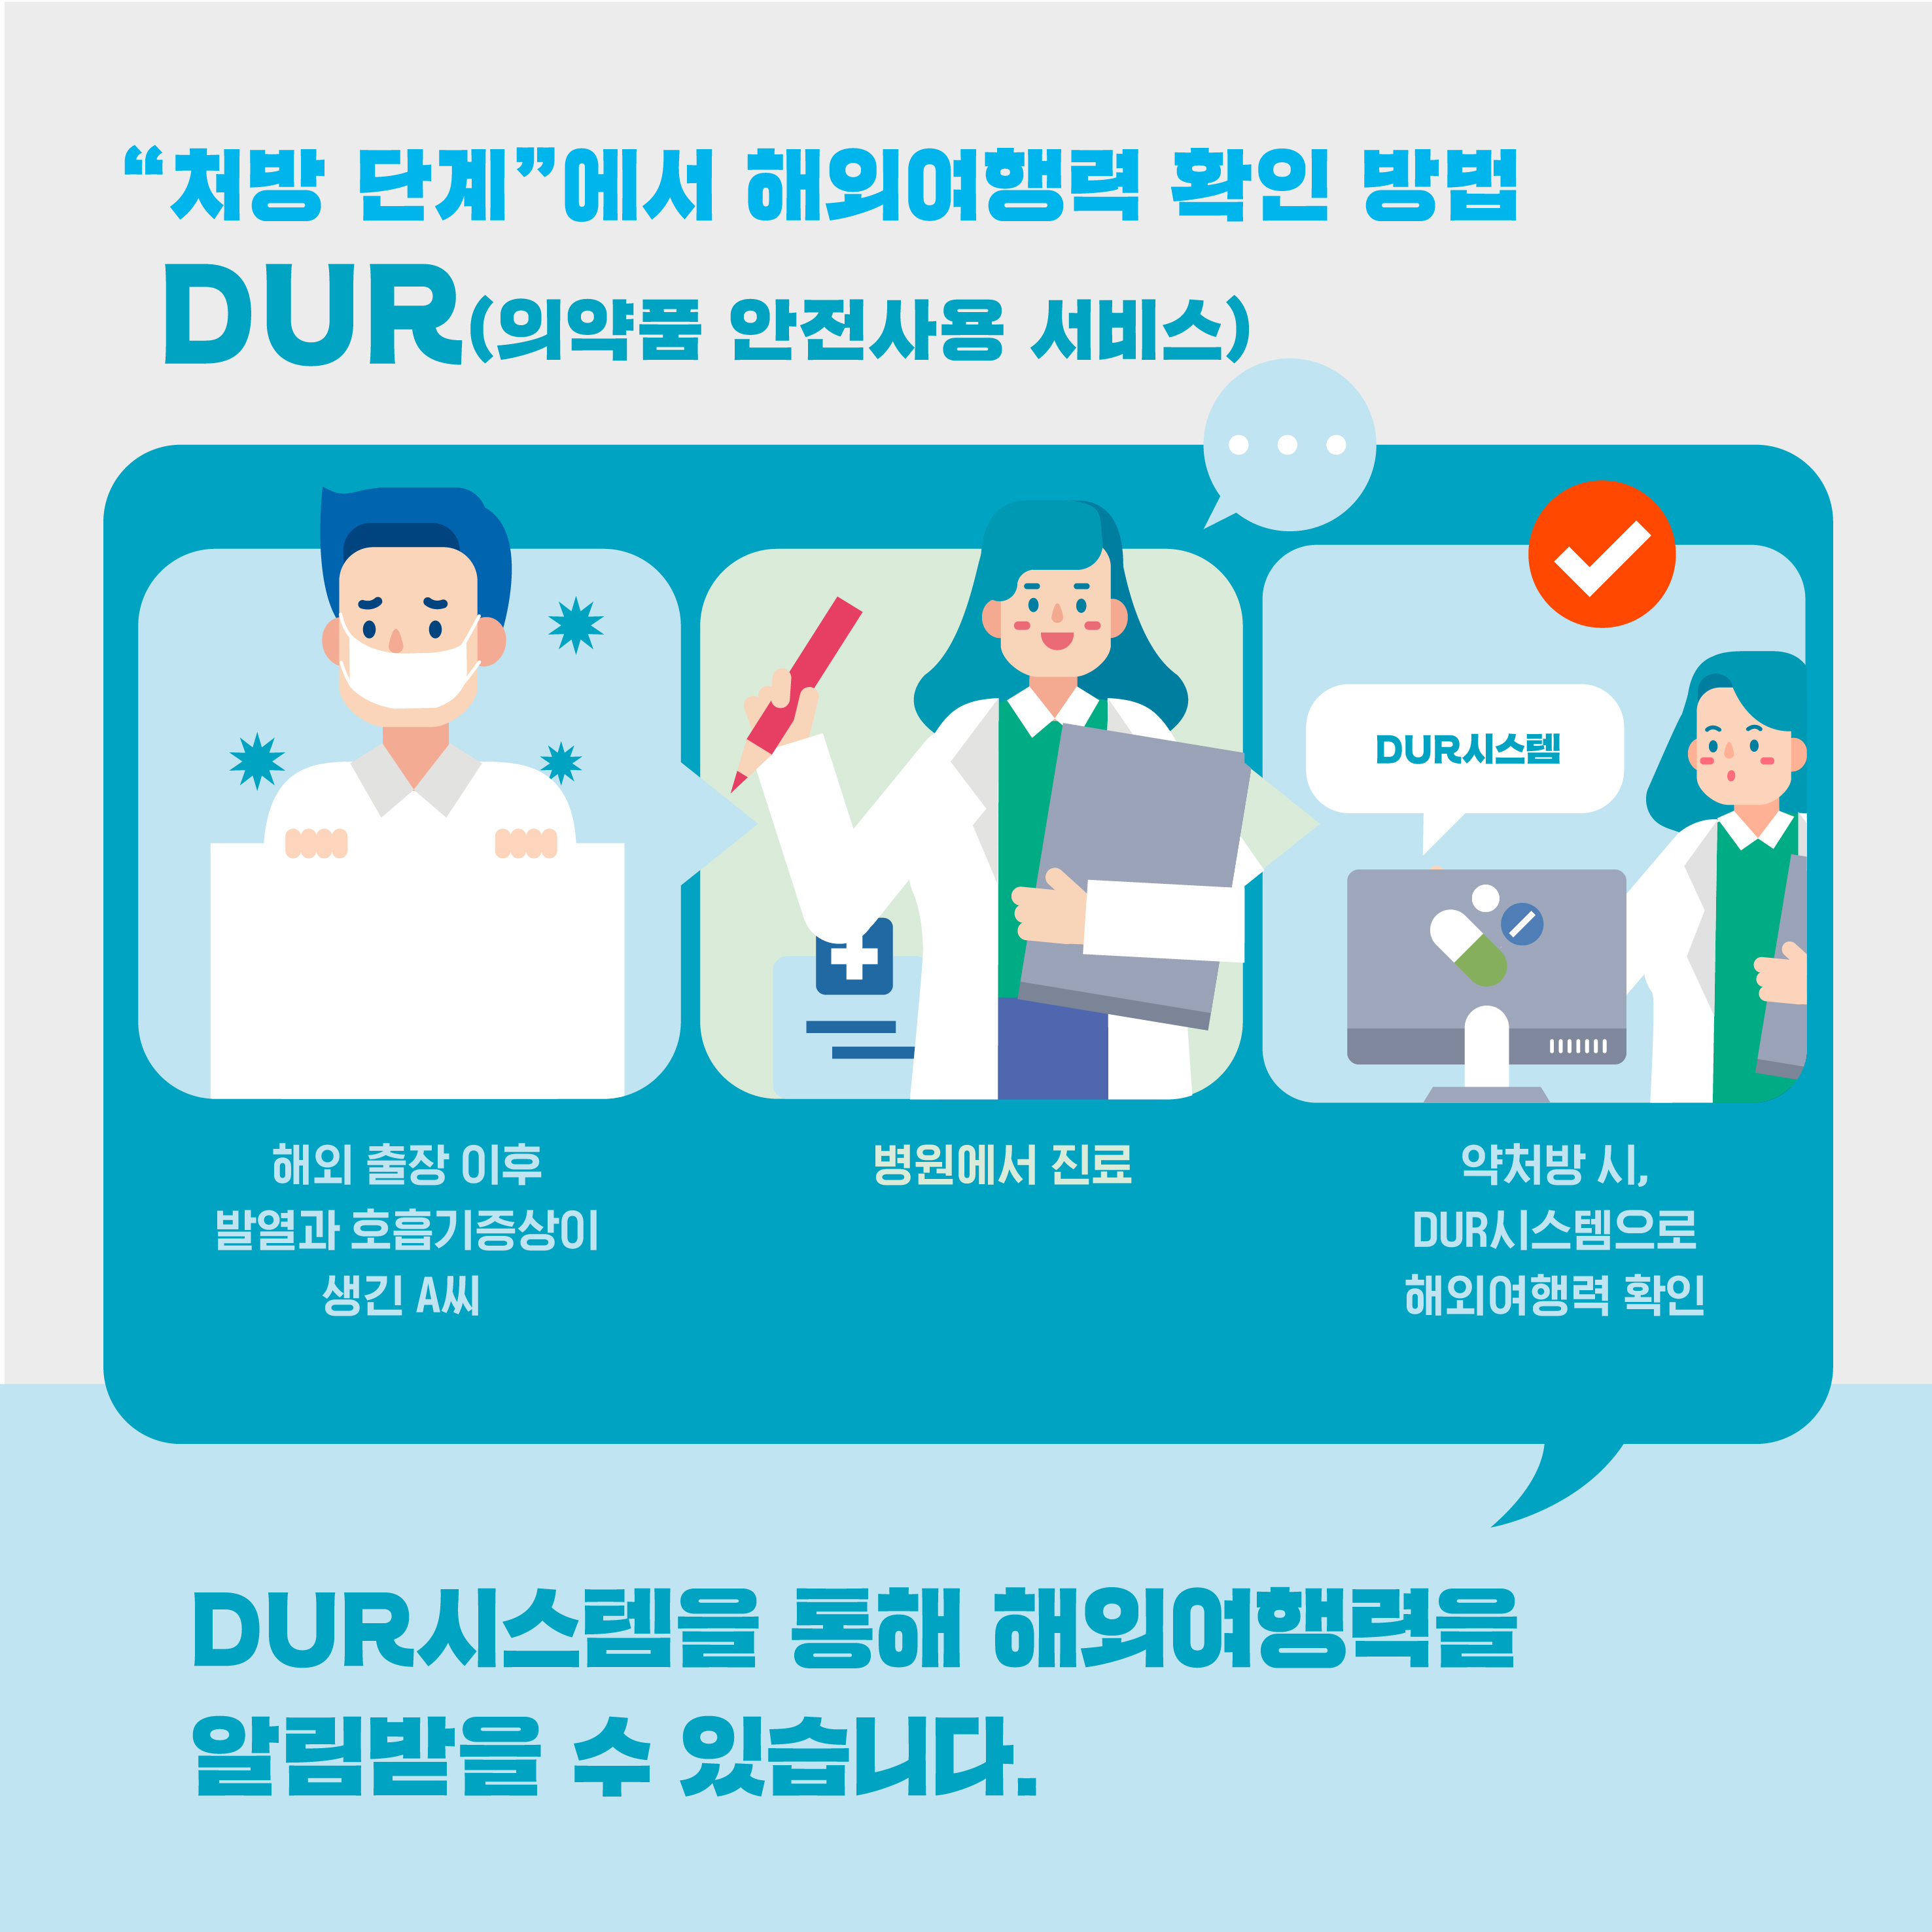 처방 단계에서 해외여행력 확인 방법 DUR(의약품 안전사용 서비스) (중단이미지) 해외 출장 이후 발열과 호흡기 증상이 생긴 A씨 병원에서 진료 약처방시, DUR시스템으로 해외여행력 확인 DUR시스템을 통해 해외여행력을 알림받을 수 있습니다.